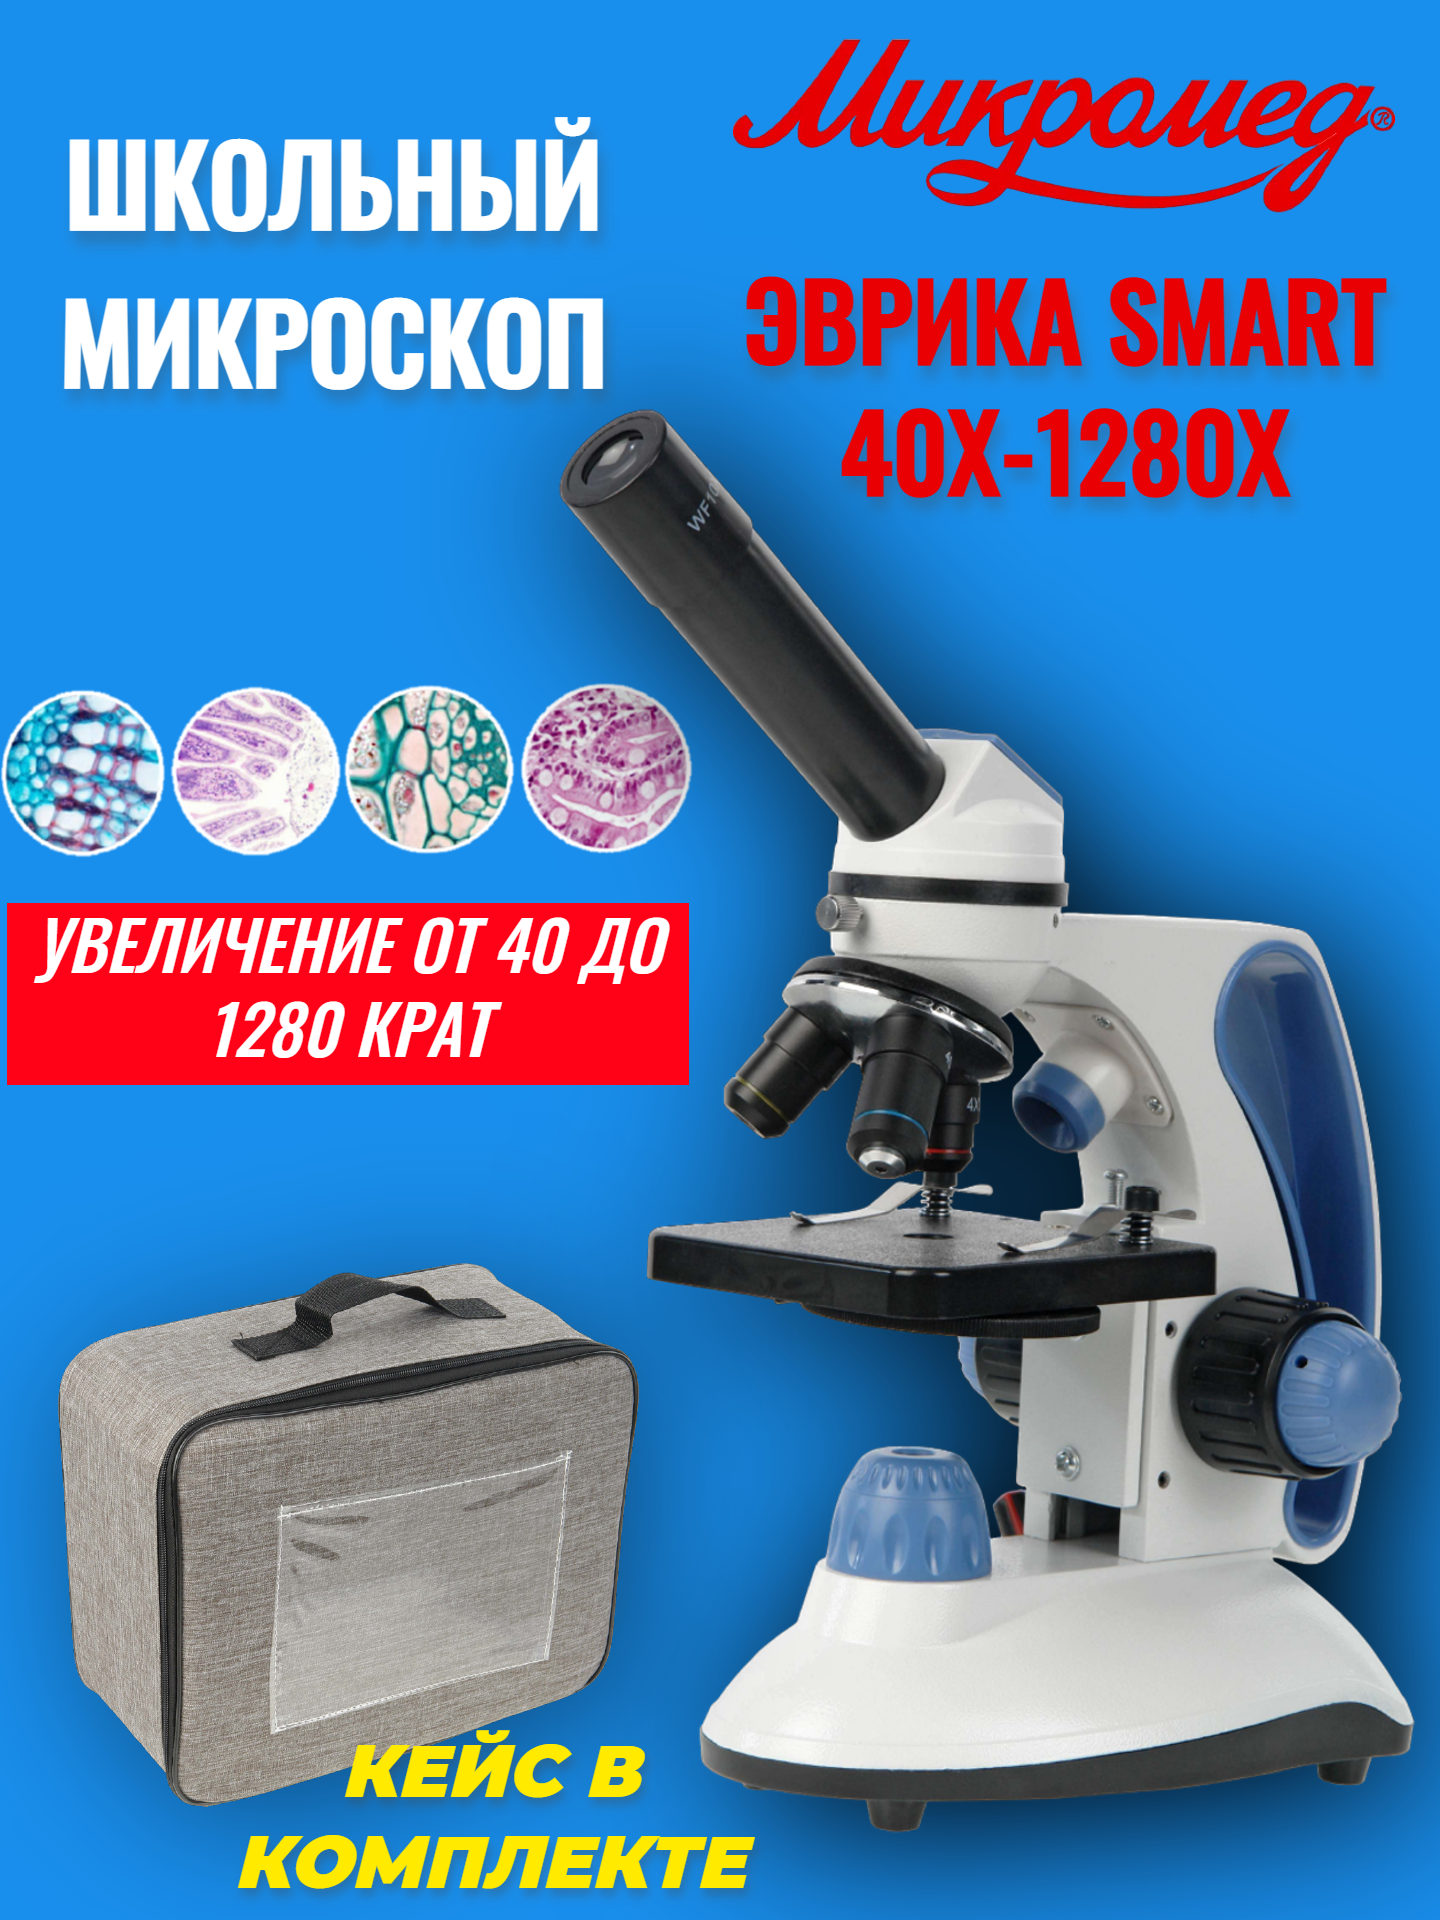 Микроскоп школьный учебный Микромед Эврика SMART 40х-1280х в текстильном кейсе микроскоп школьный микромед эврика 40х 400х в кейсе аметист